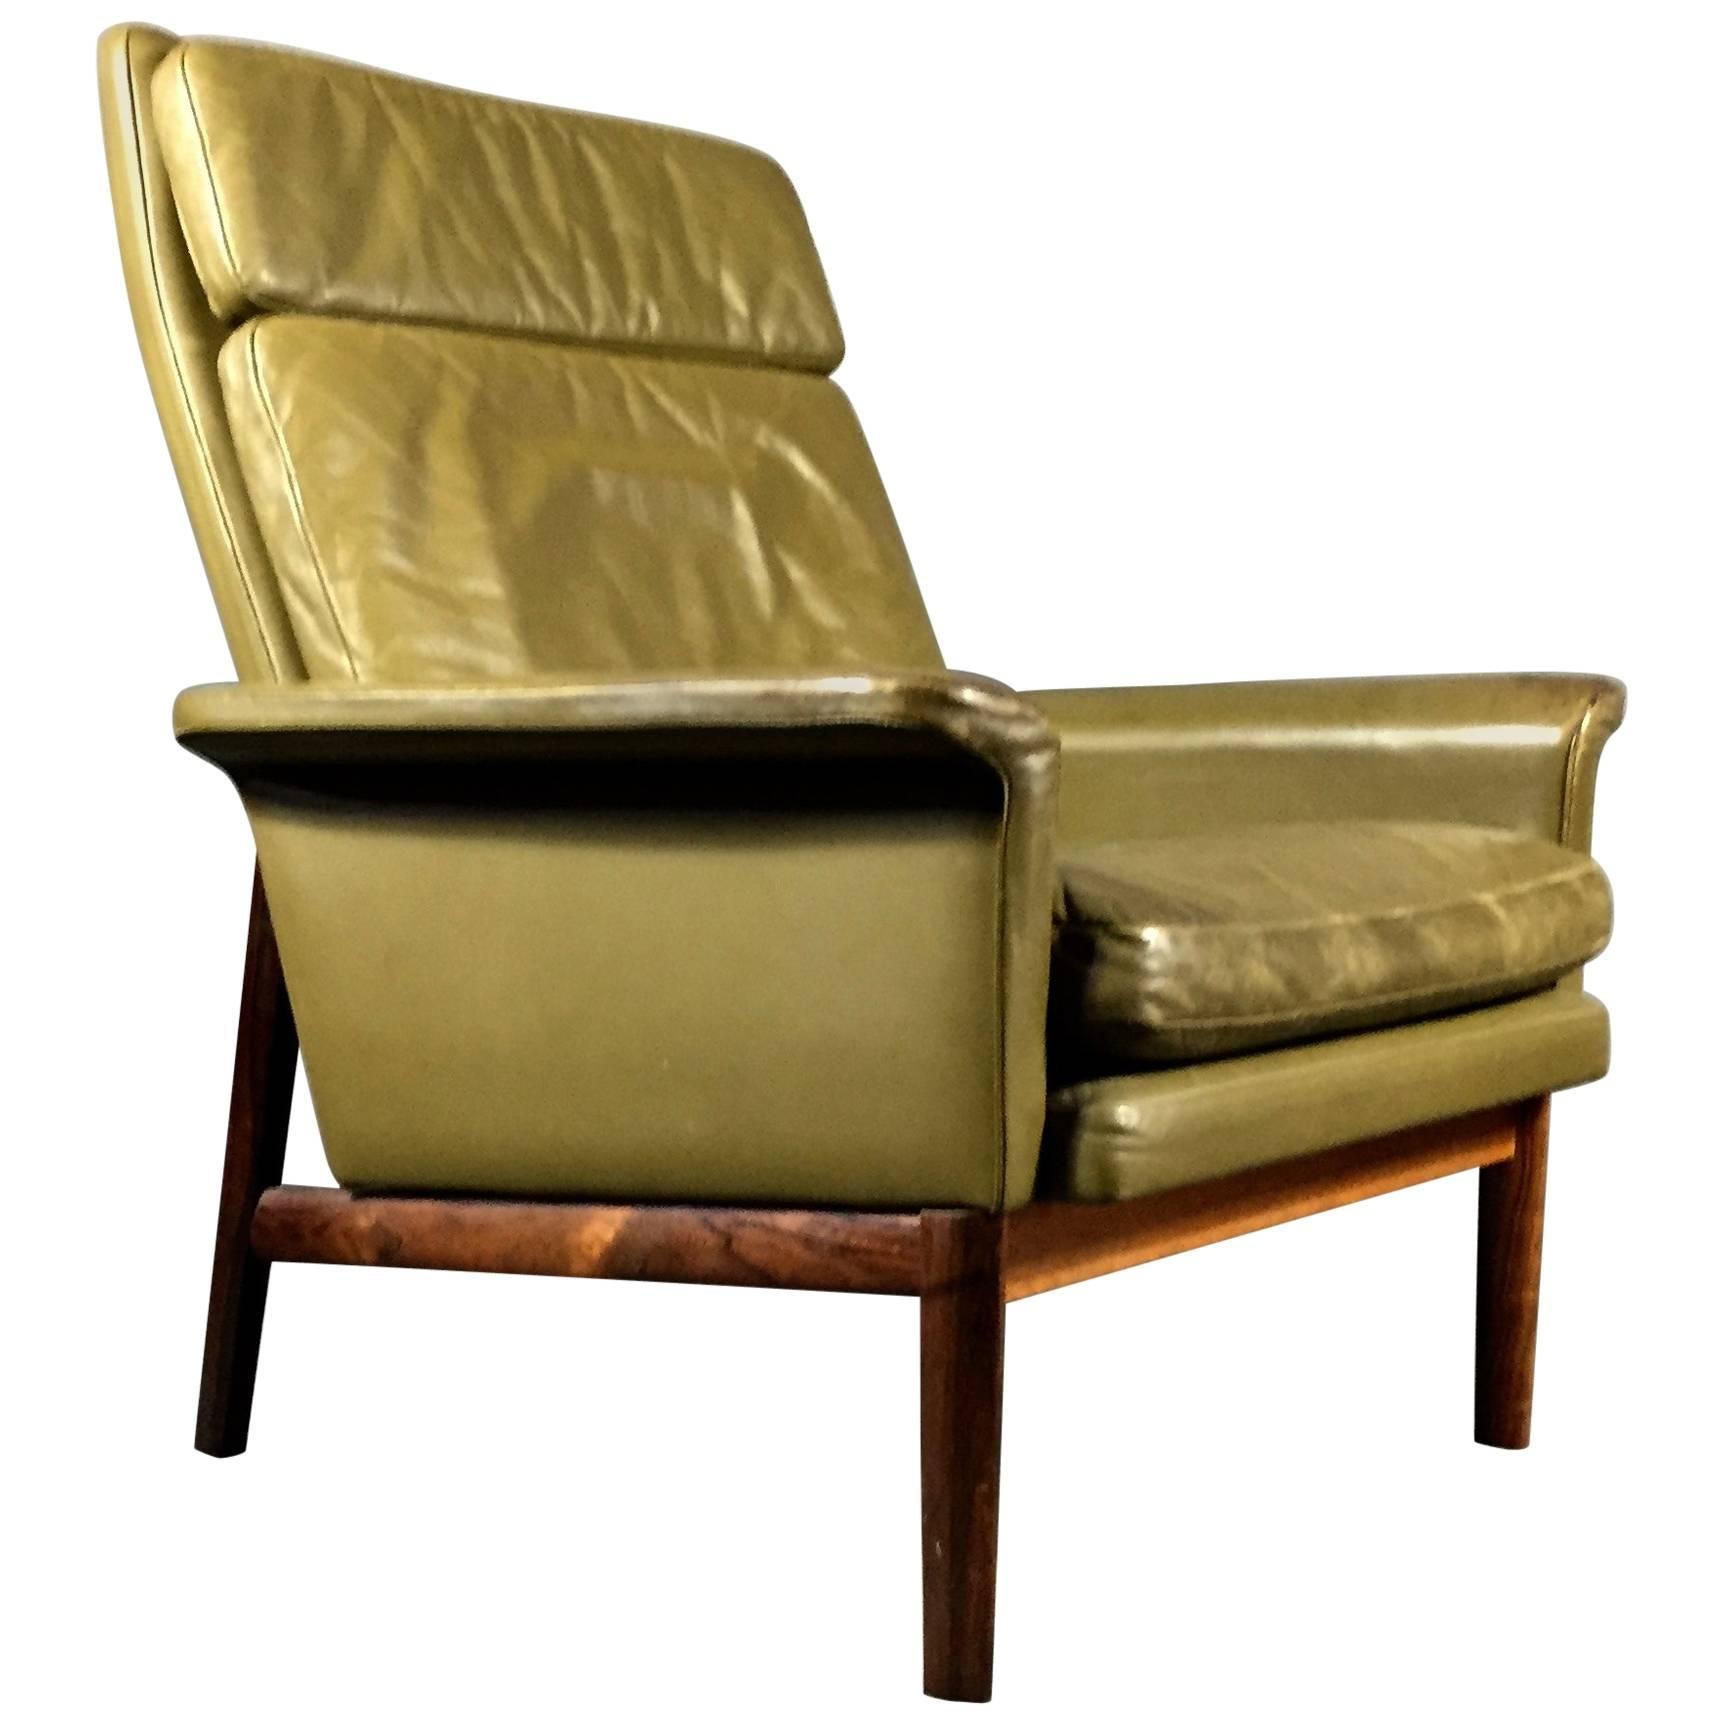 Finn Juhl "Jupiter" Lounge Chair for France & Søn, Denmark, 1960s